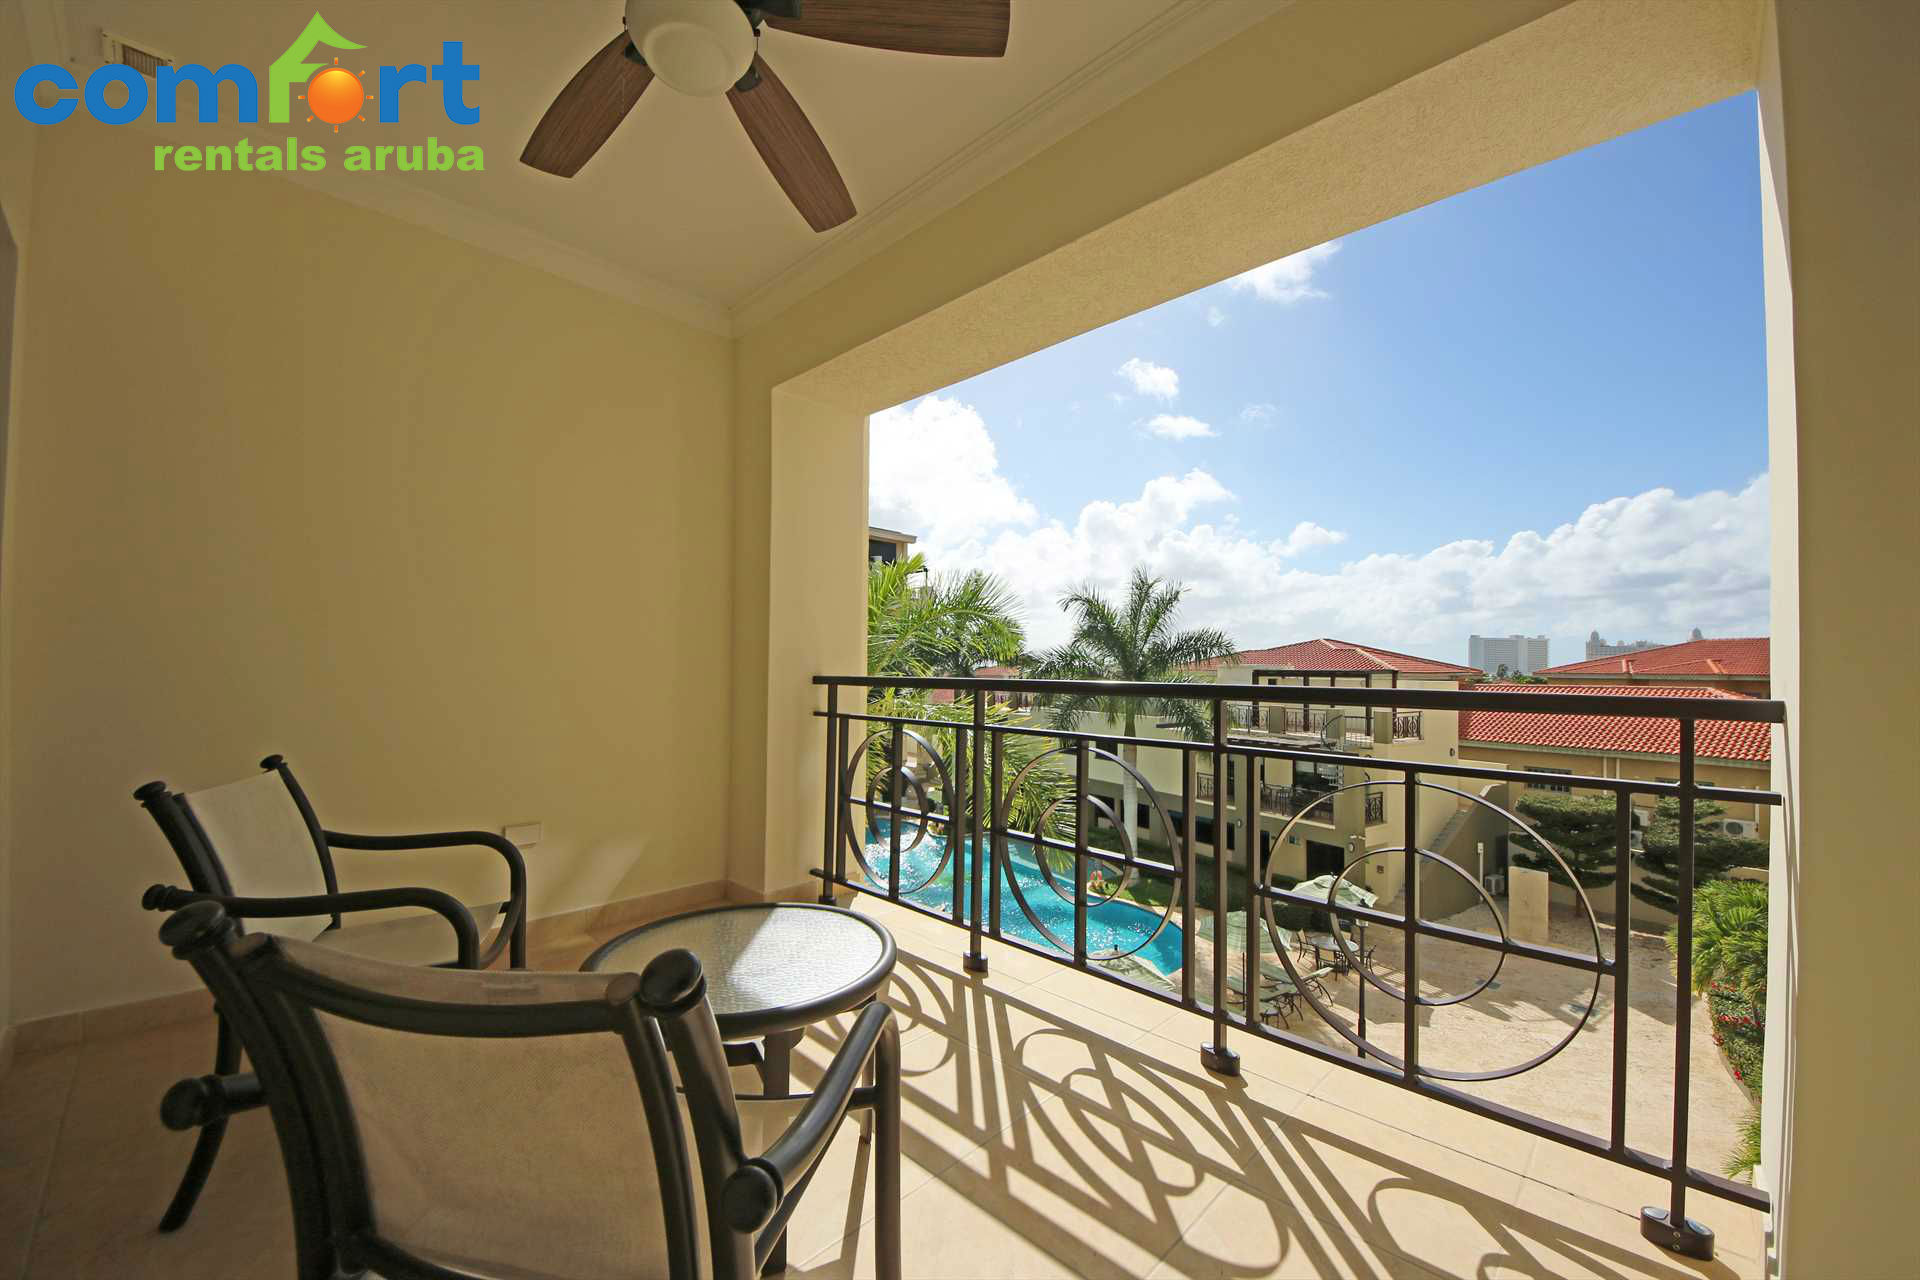 Enjoy sunny days out on you balcony